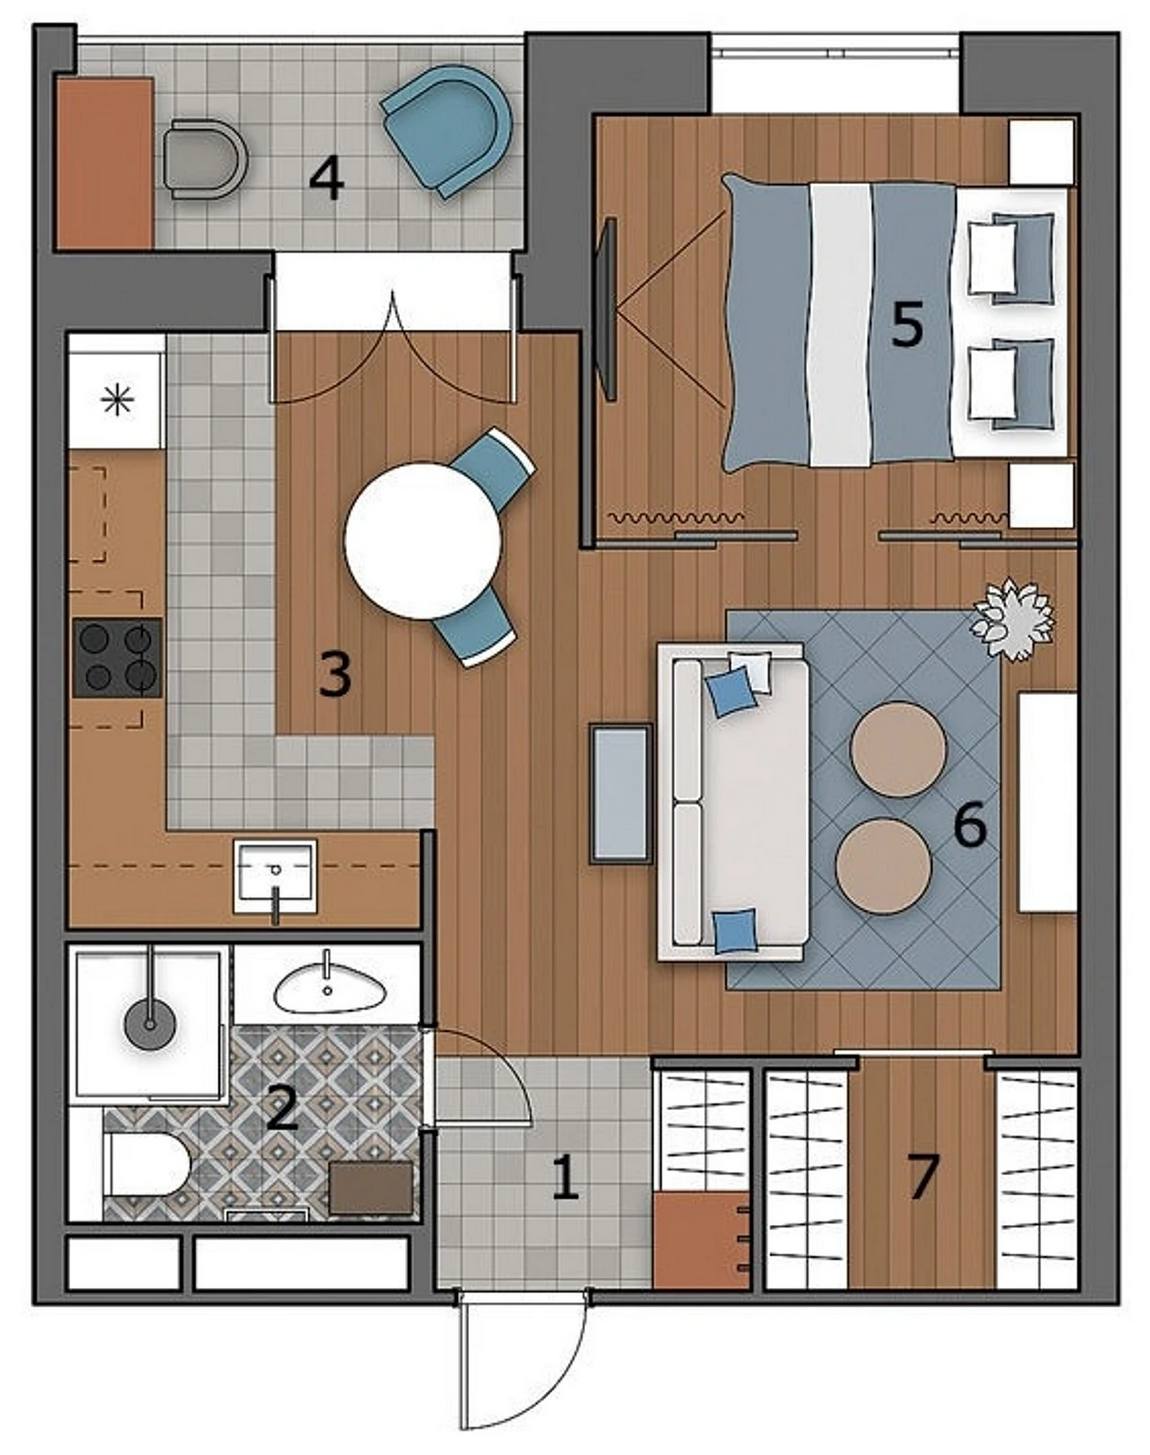 Cải tạo căn hộ 46m² với nội thất màu xanh lam cho vẻ đẹp yên bình, tinh tế của cặp vợ chồng son - Ảnh 3